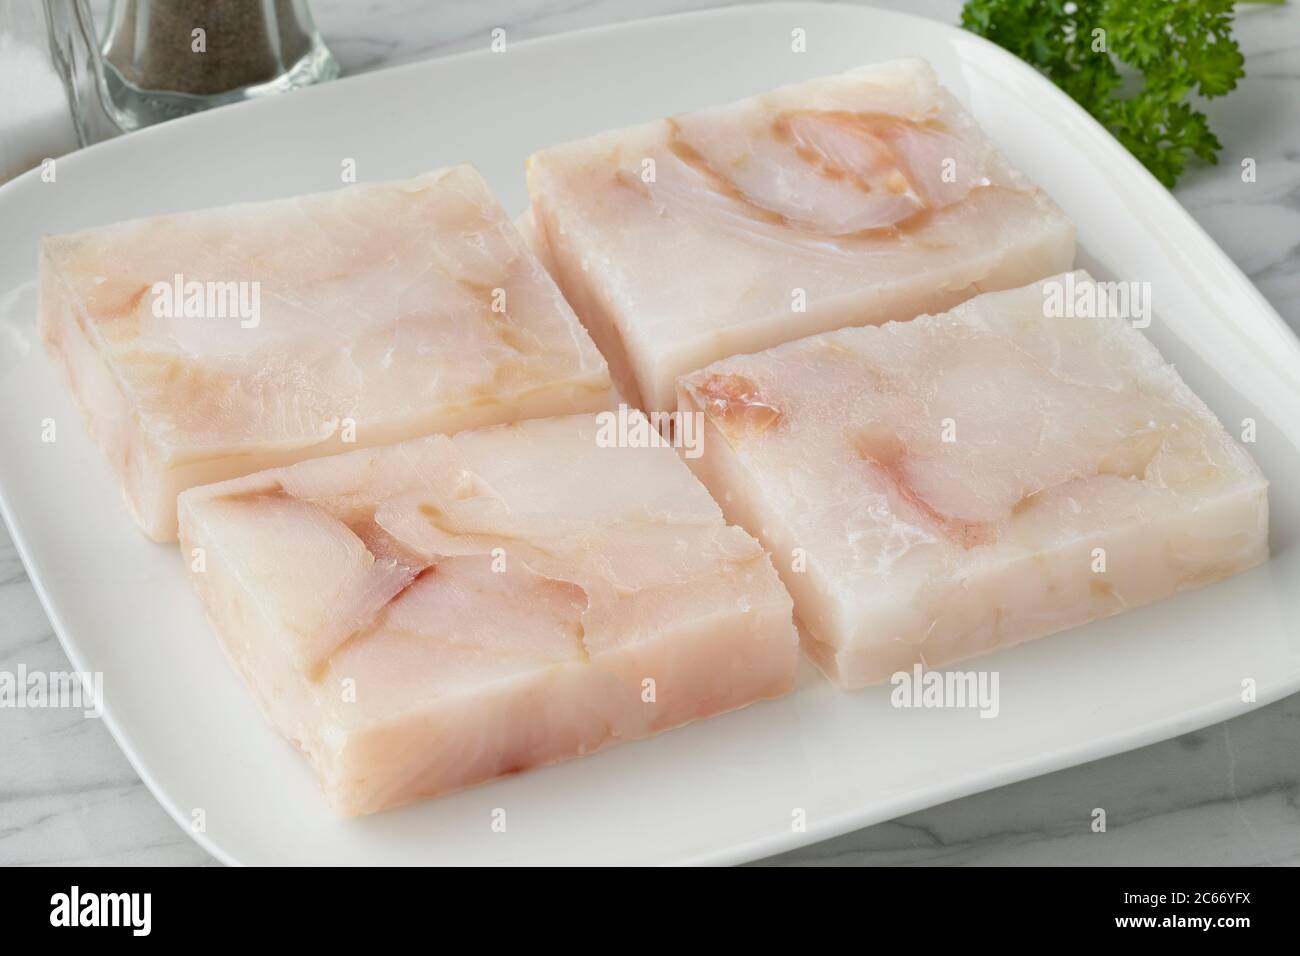 Piatto con filetti di pesce di merluzzo surgelati per scongelare come ingrediente per cucinare Foto Stock